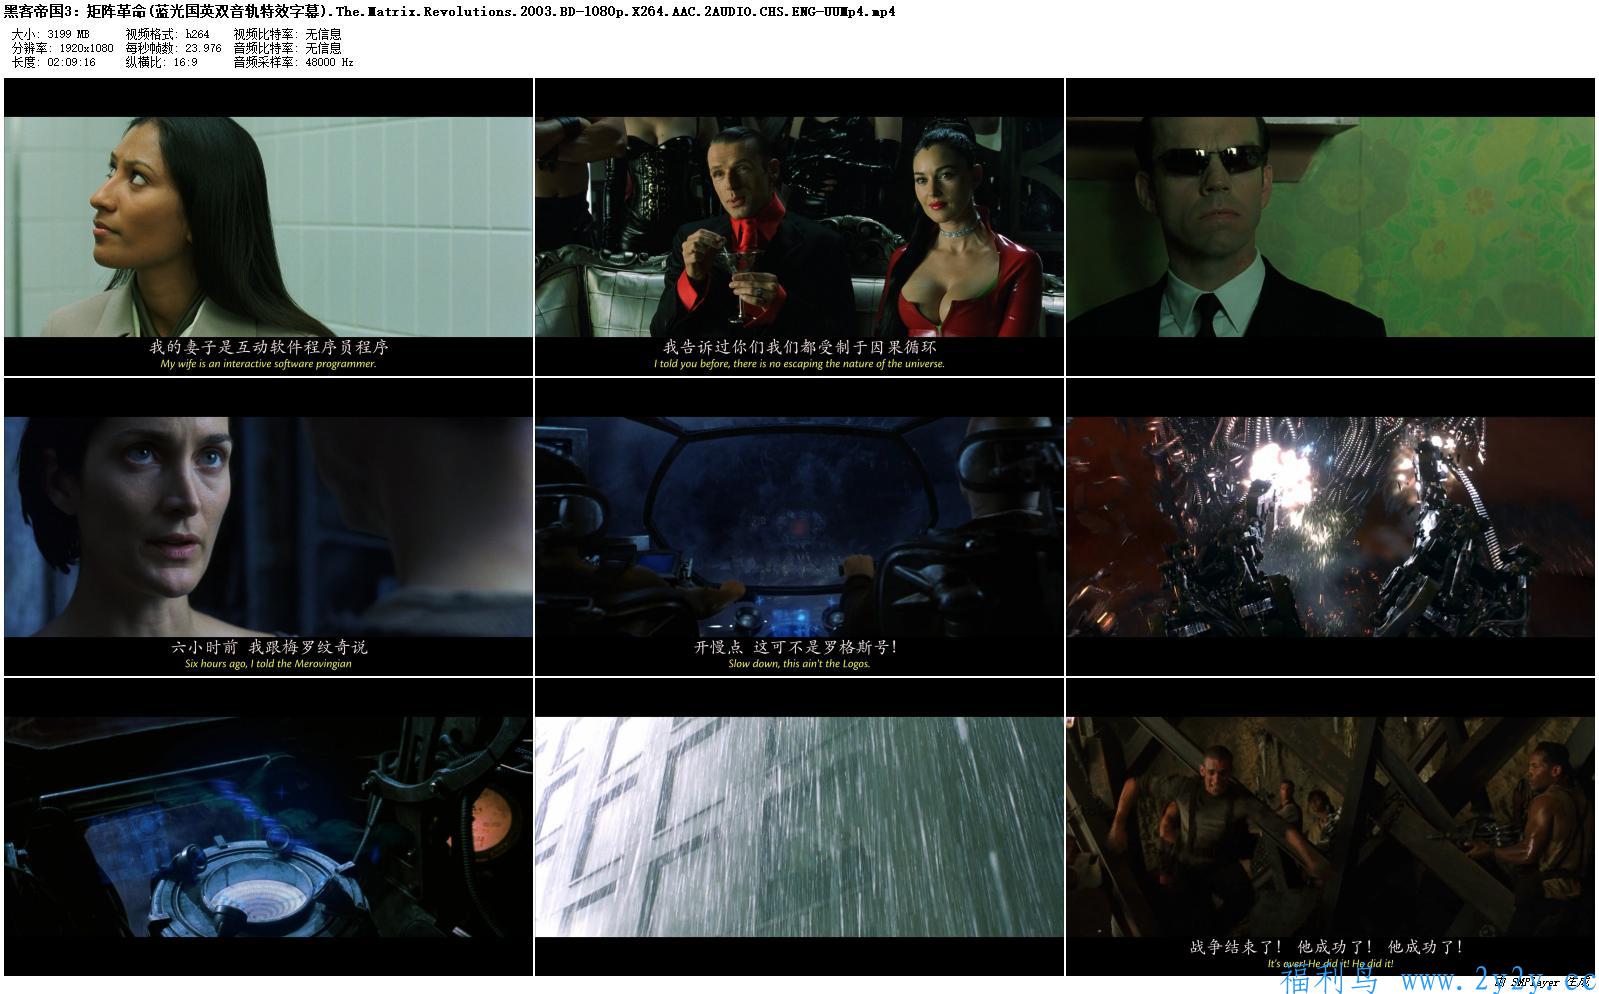 [电影] 黑客帝国4部曲+动画版及前传 | 1080P | 精校中文字幕 | 最全版本